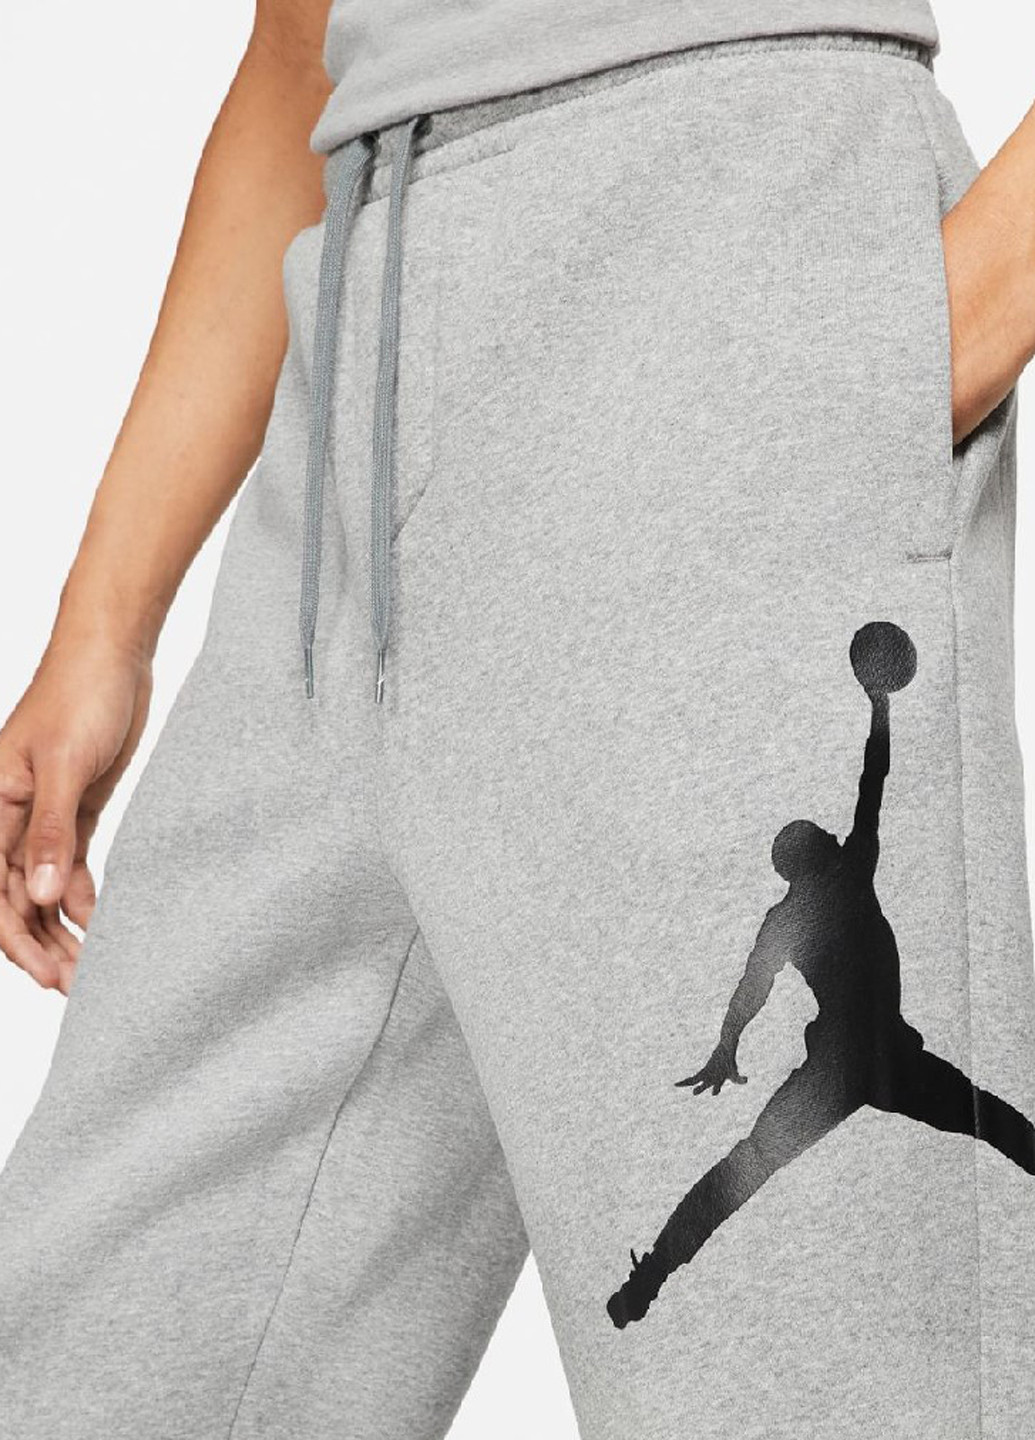 Серые спортивные демисезонные джоггеры брюки Jordan